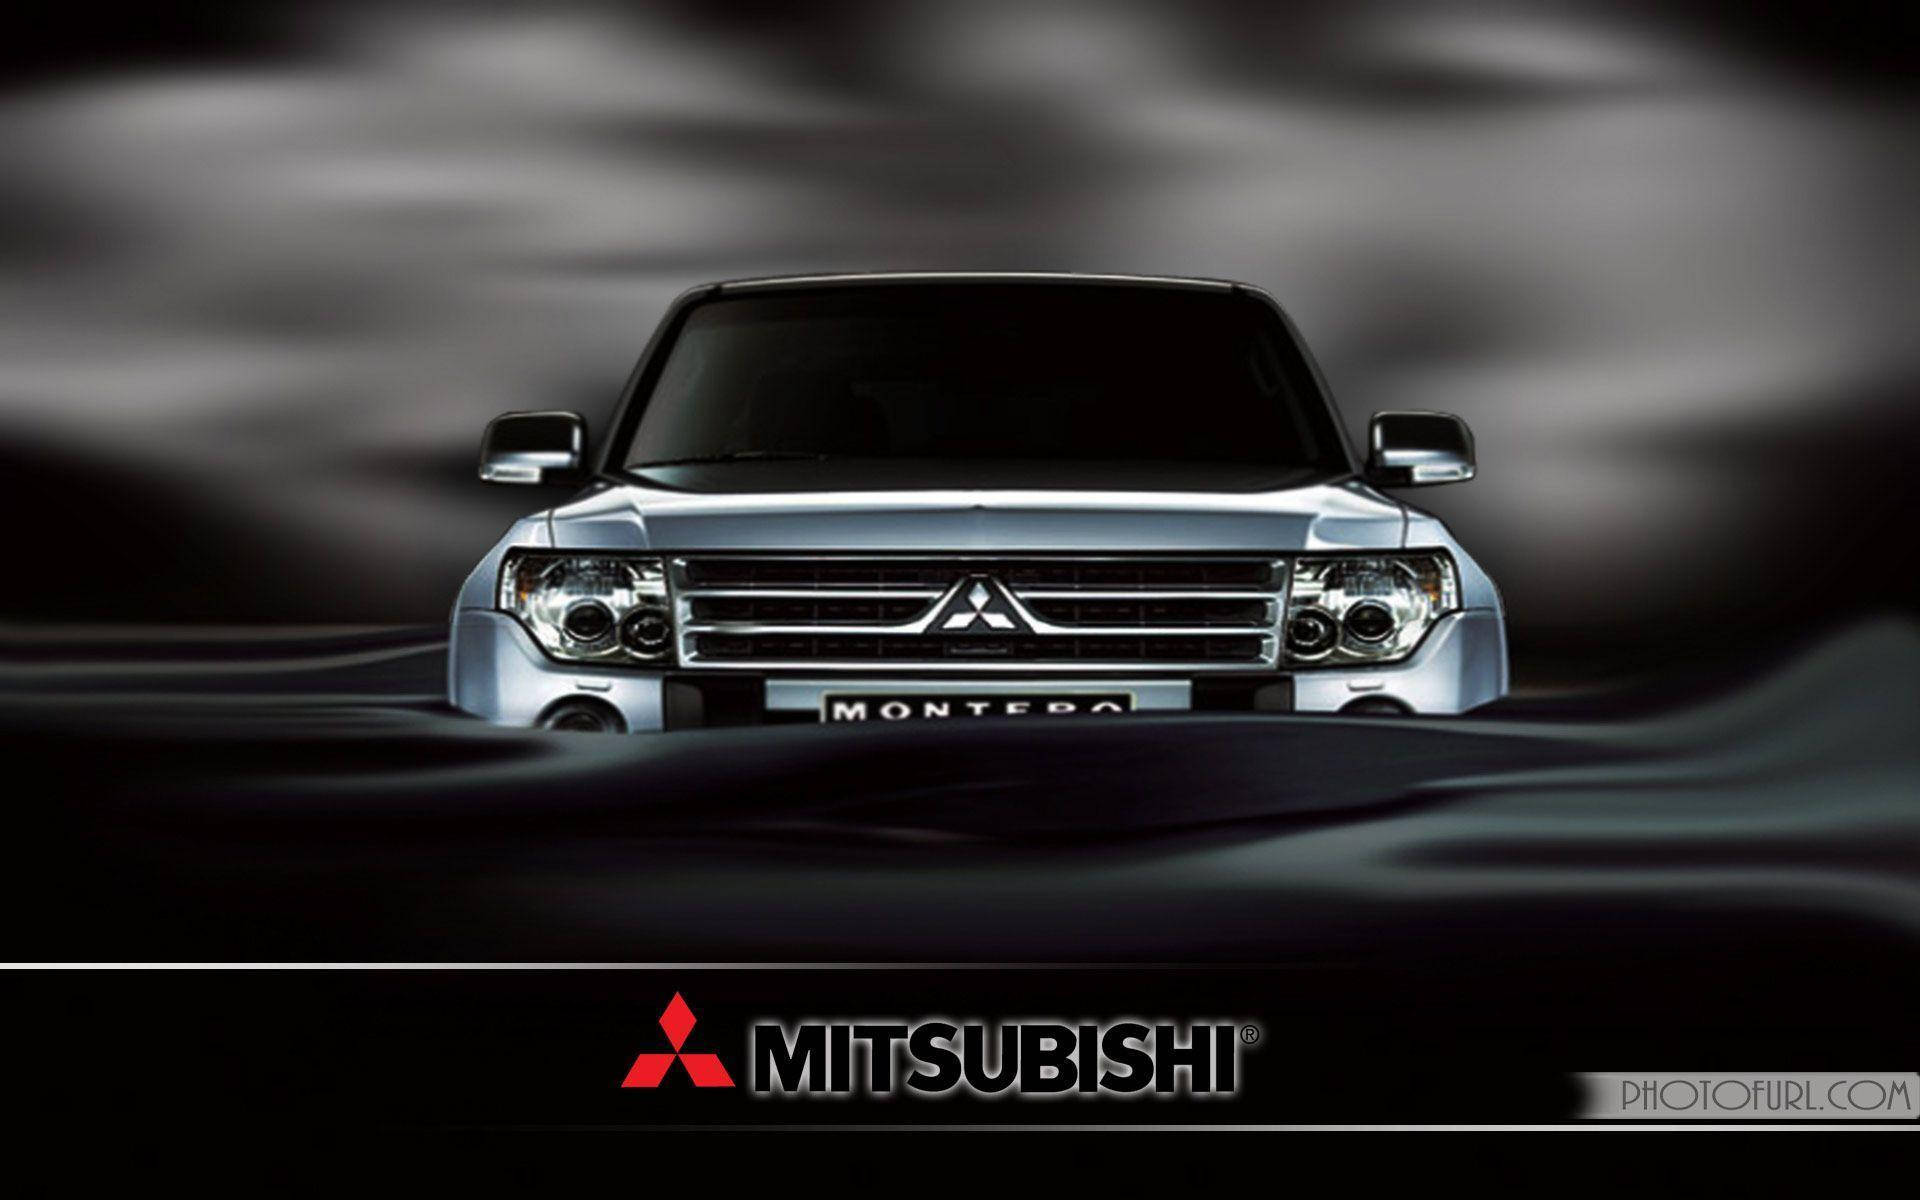 Front View Mitsubishi Montero Background